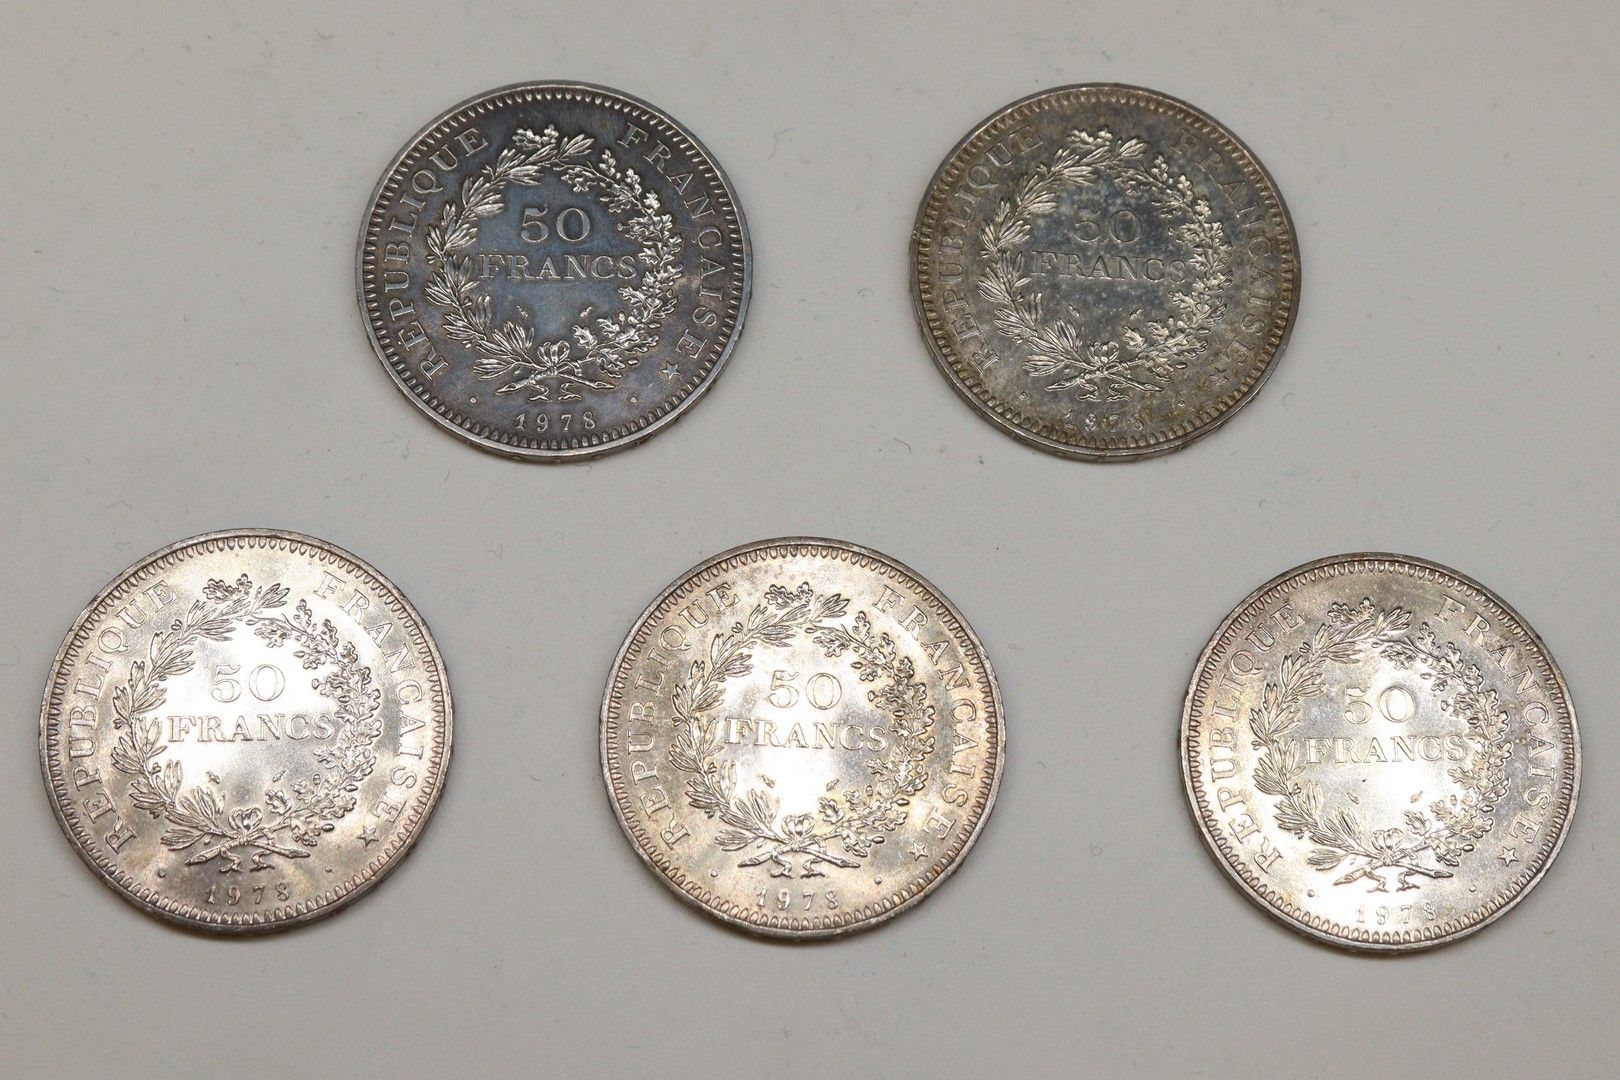 Null Lot de 5 pièces de 50 francs Hercule (1978)

TB à TTB

Poids : 150,04 g.